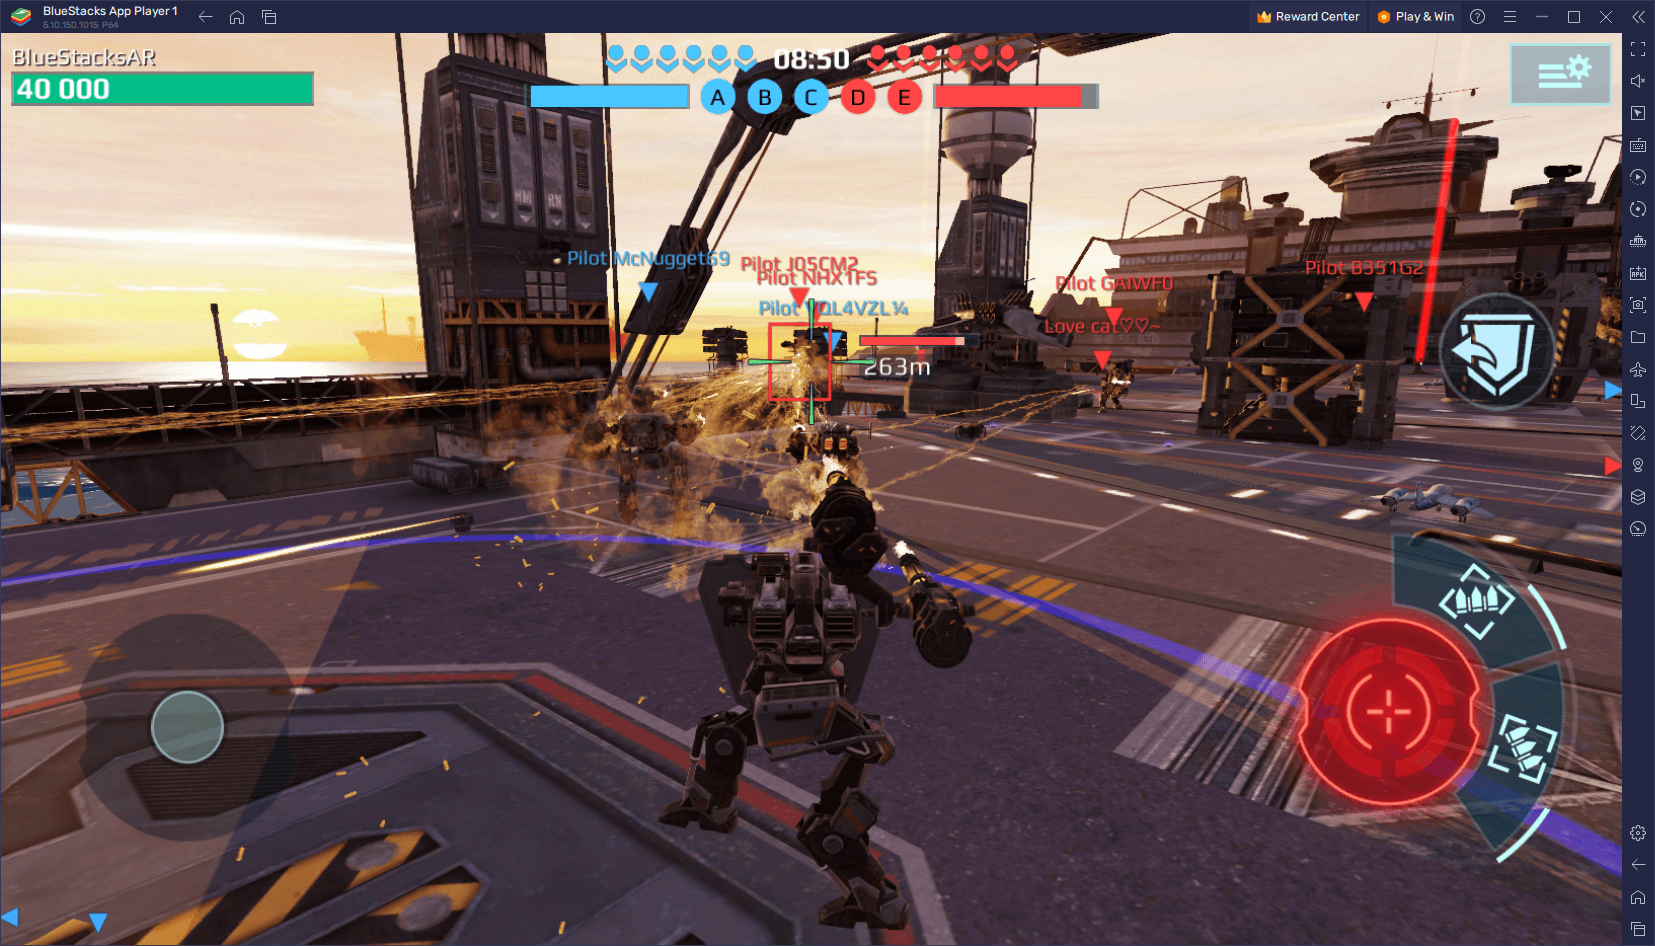 วิธีเล่น War Robots บนพีซีด้วย BlueStacks ที่ความลื่นไหล 240 FPS